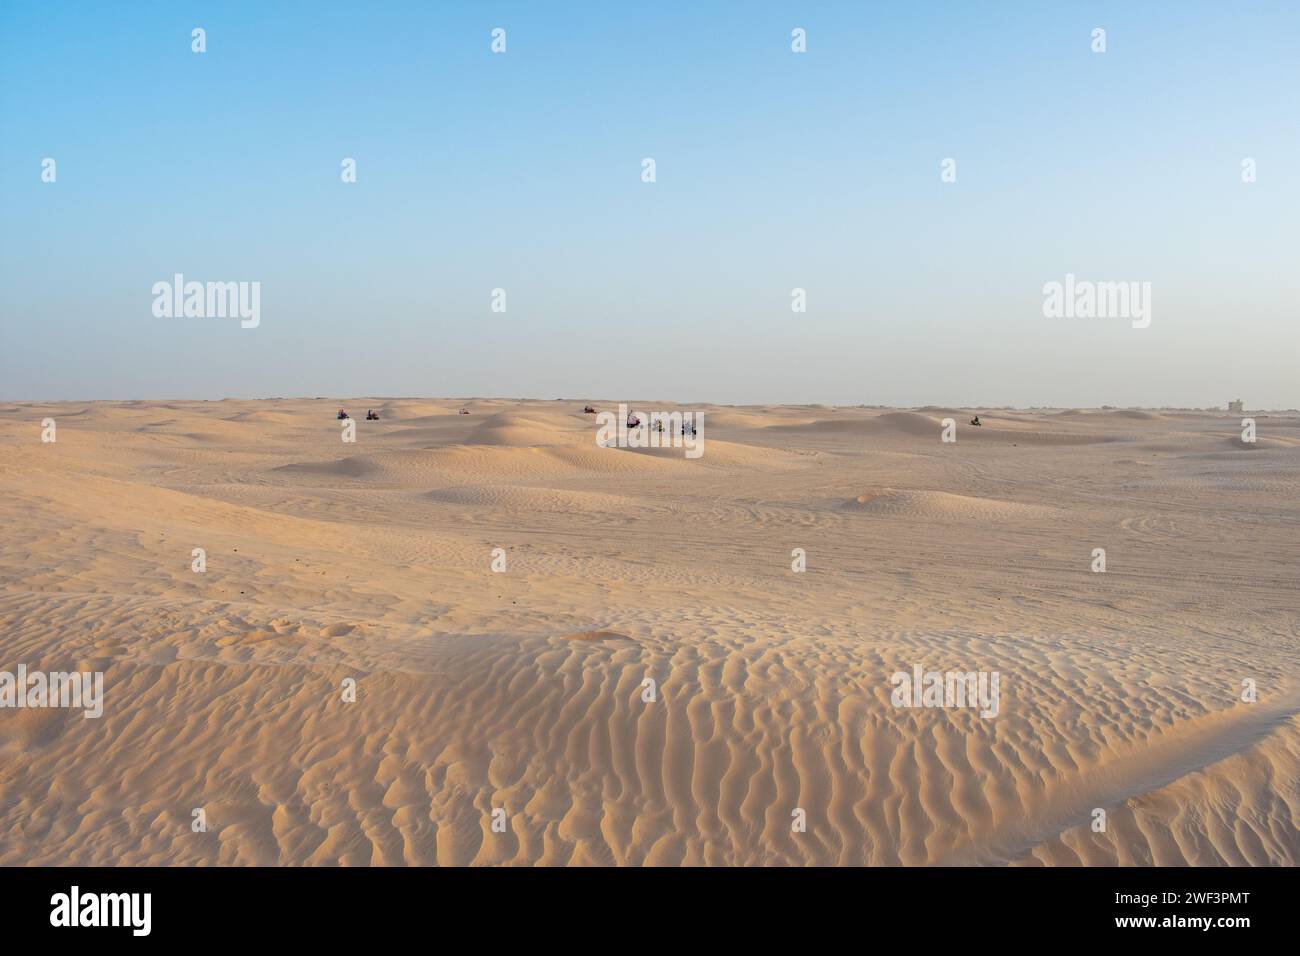 06.11.23 deserto del Sahara, Tunisia: Safari in quad nel deserto del Sahara, Tunisia. Persone che guidano quad sulle dune di sabbia Foto Stock